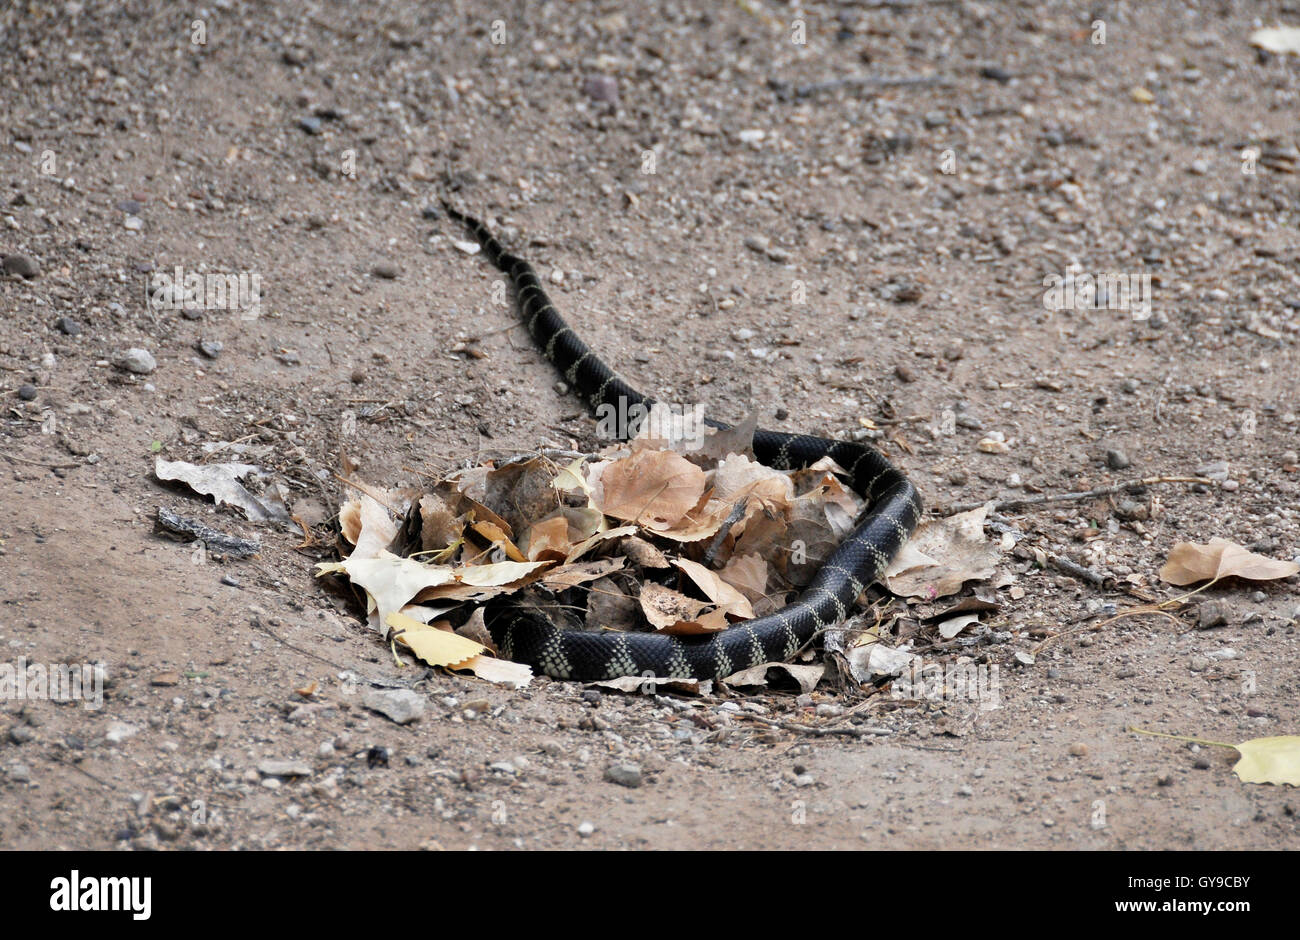 Un Kingsnake, una serpiente colubrid, miembro del género Lampropeltis, desierto Sonoran, Tucson, Arizona, EE.UU. Foto de stock